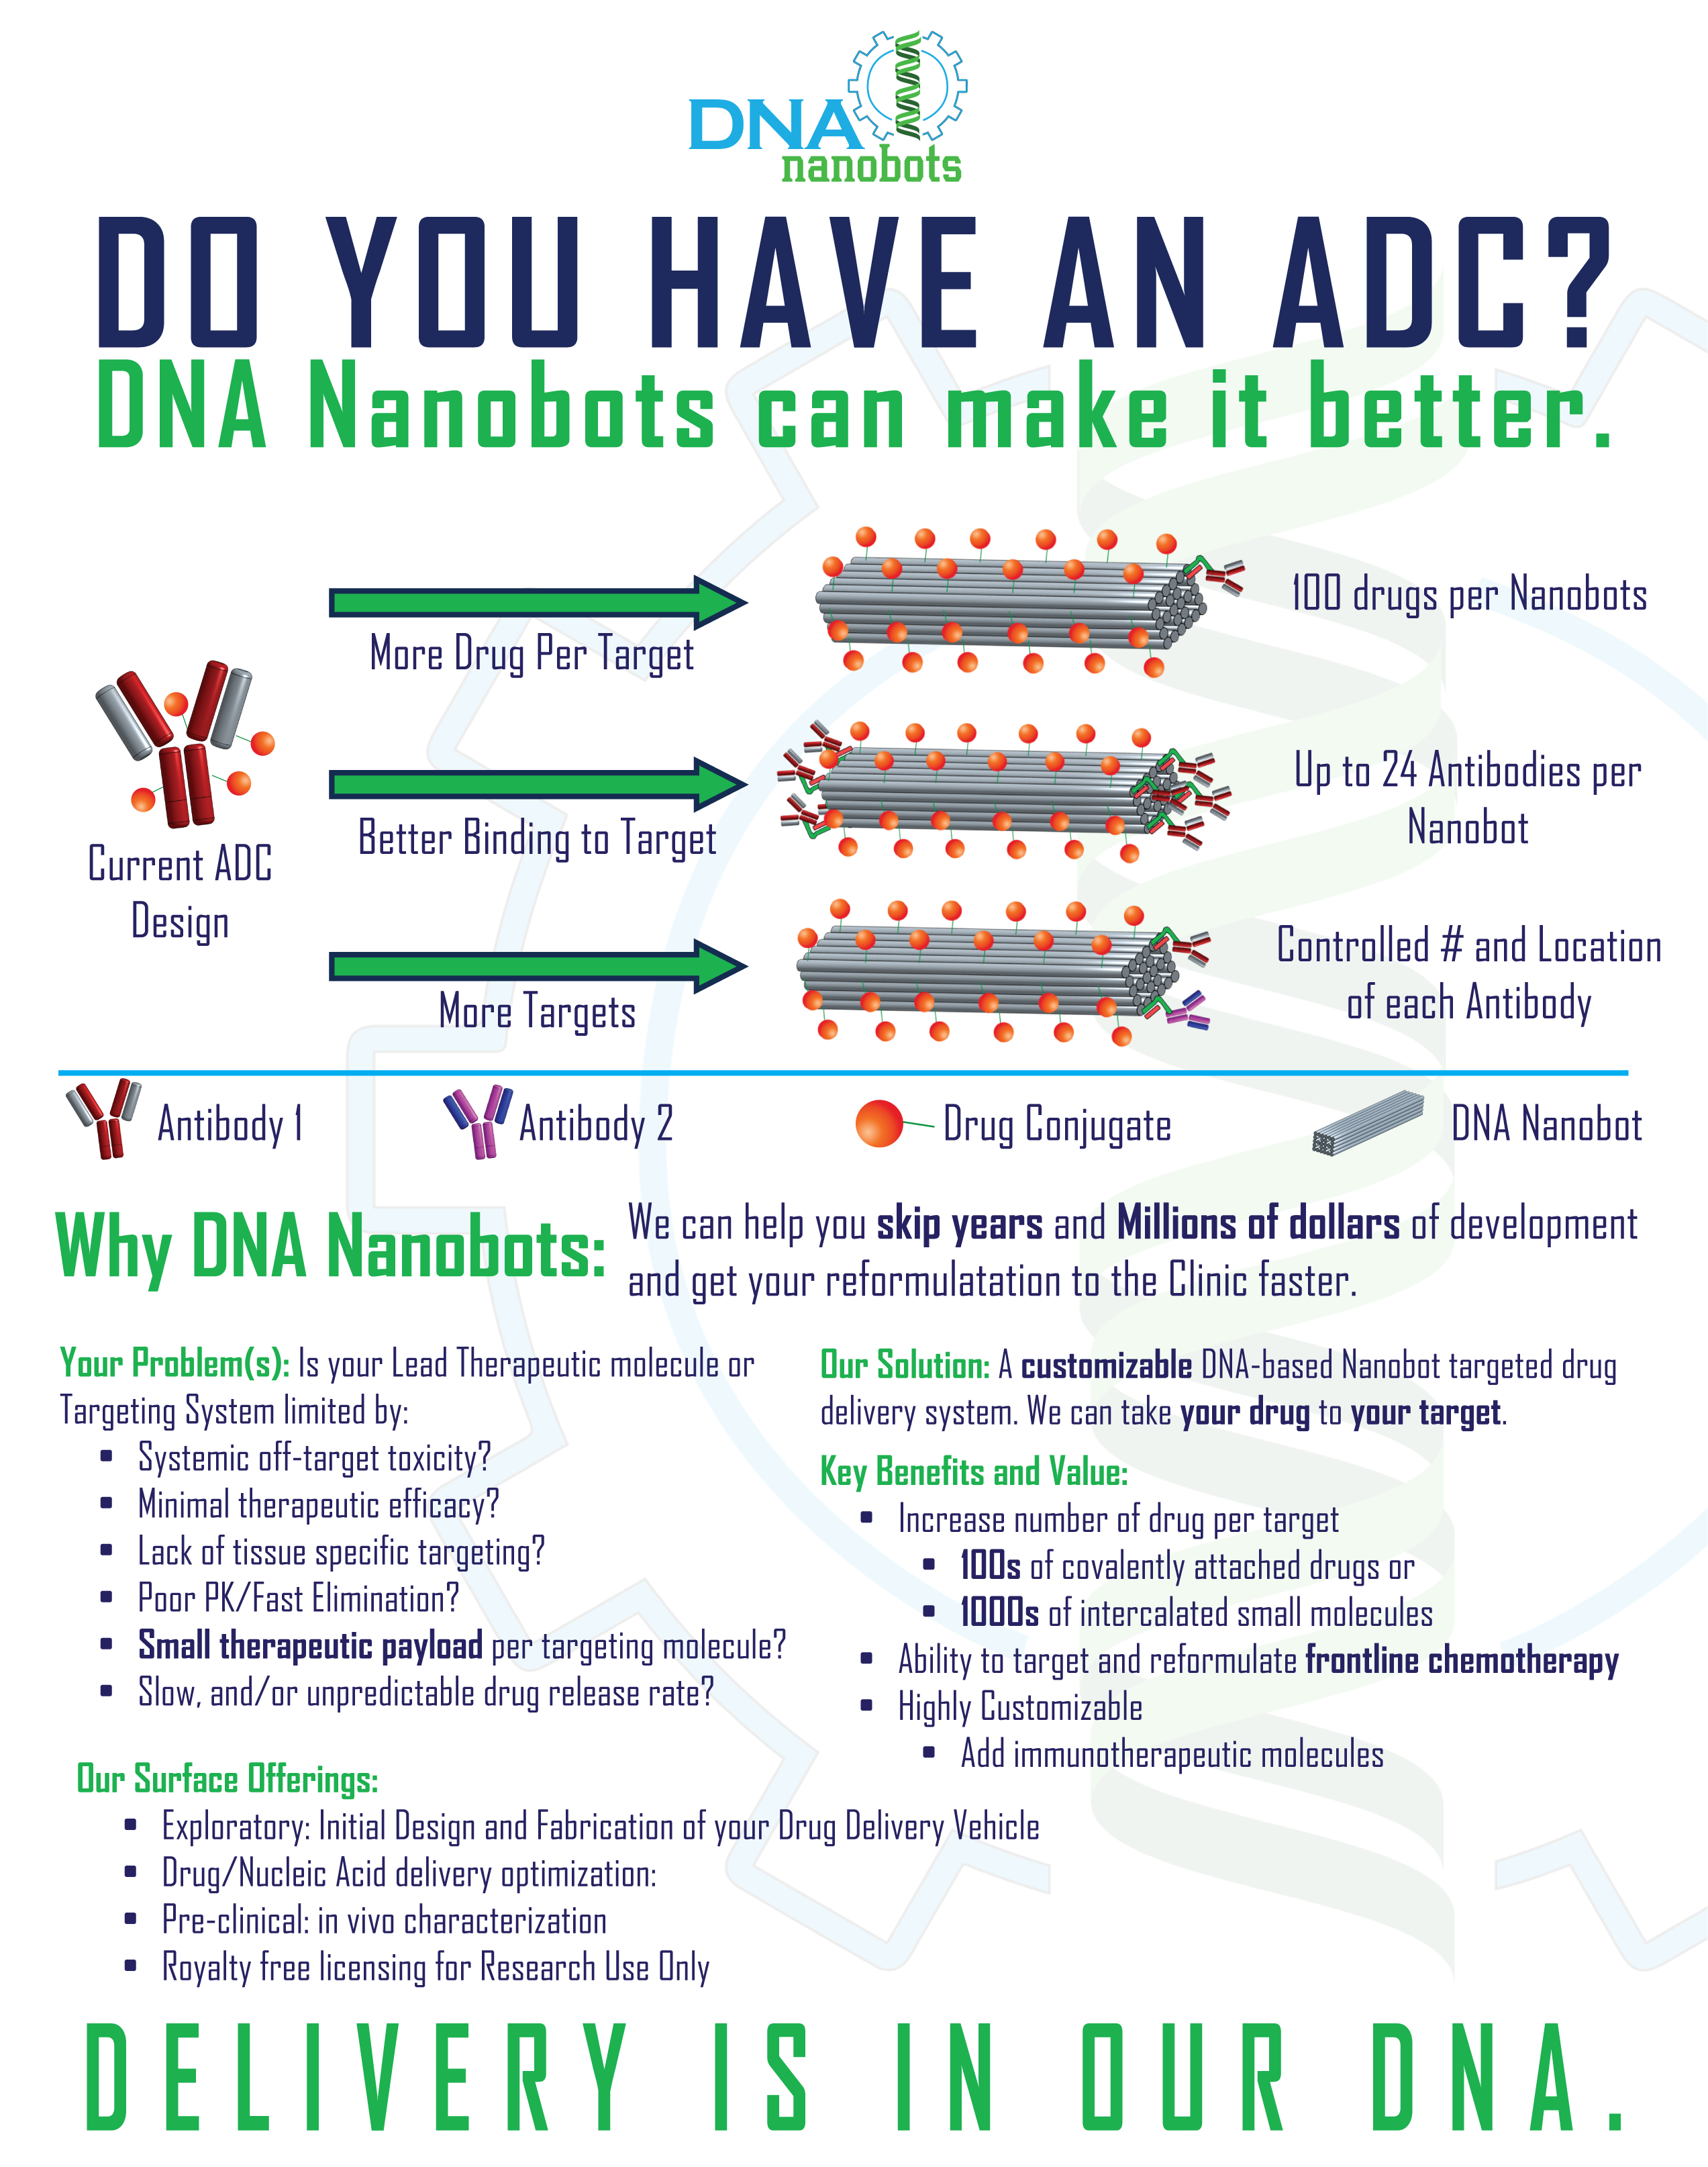 Improve ADCs using DNA Nanobots